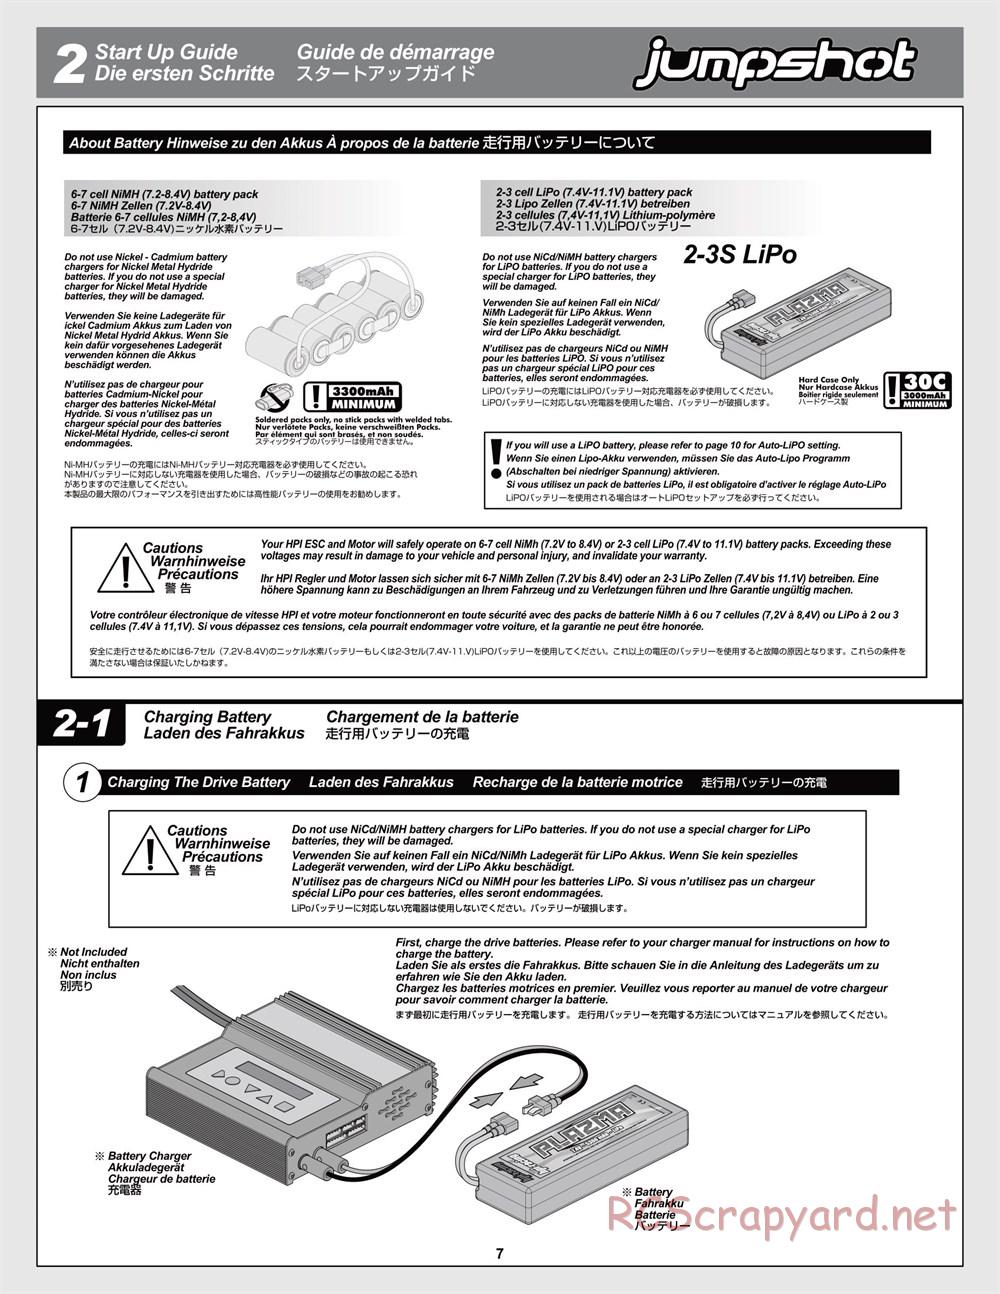 HPI - Jumpshot MT Flux - Manual - Page 7